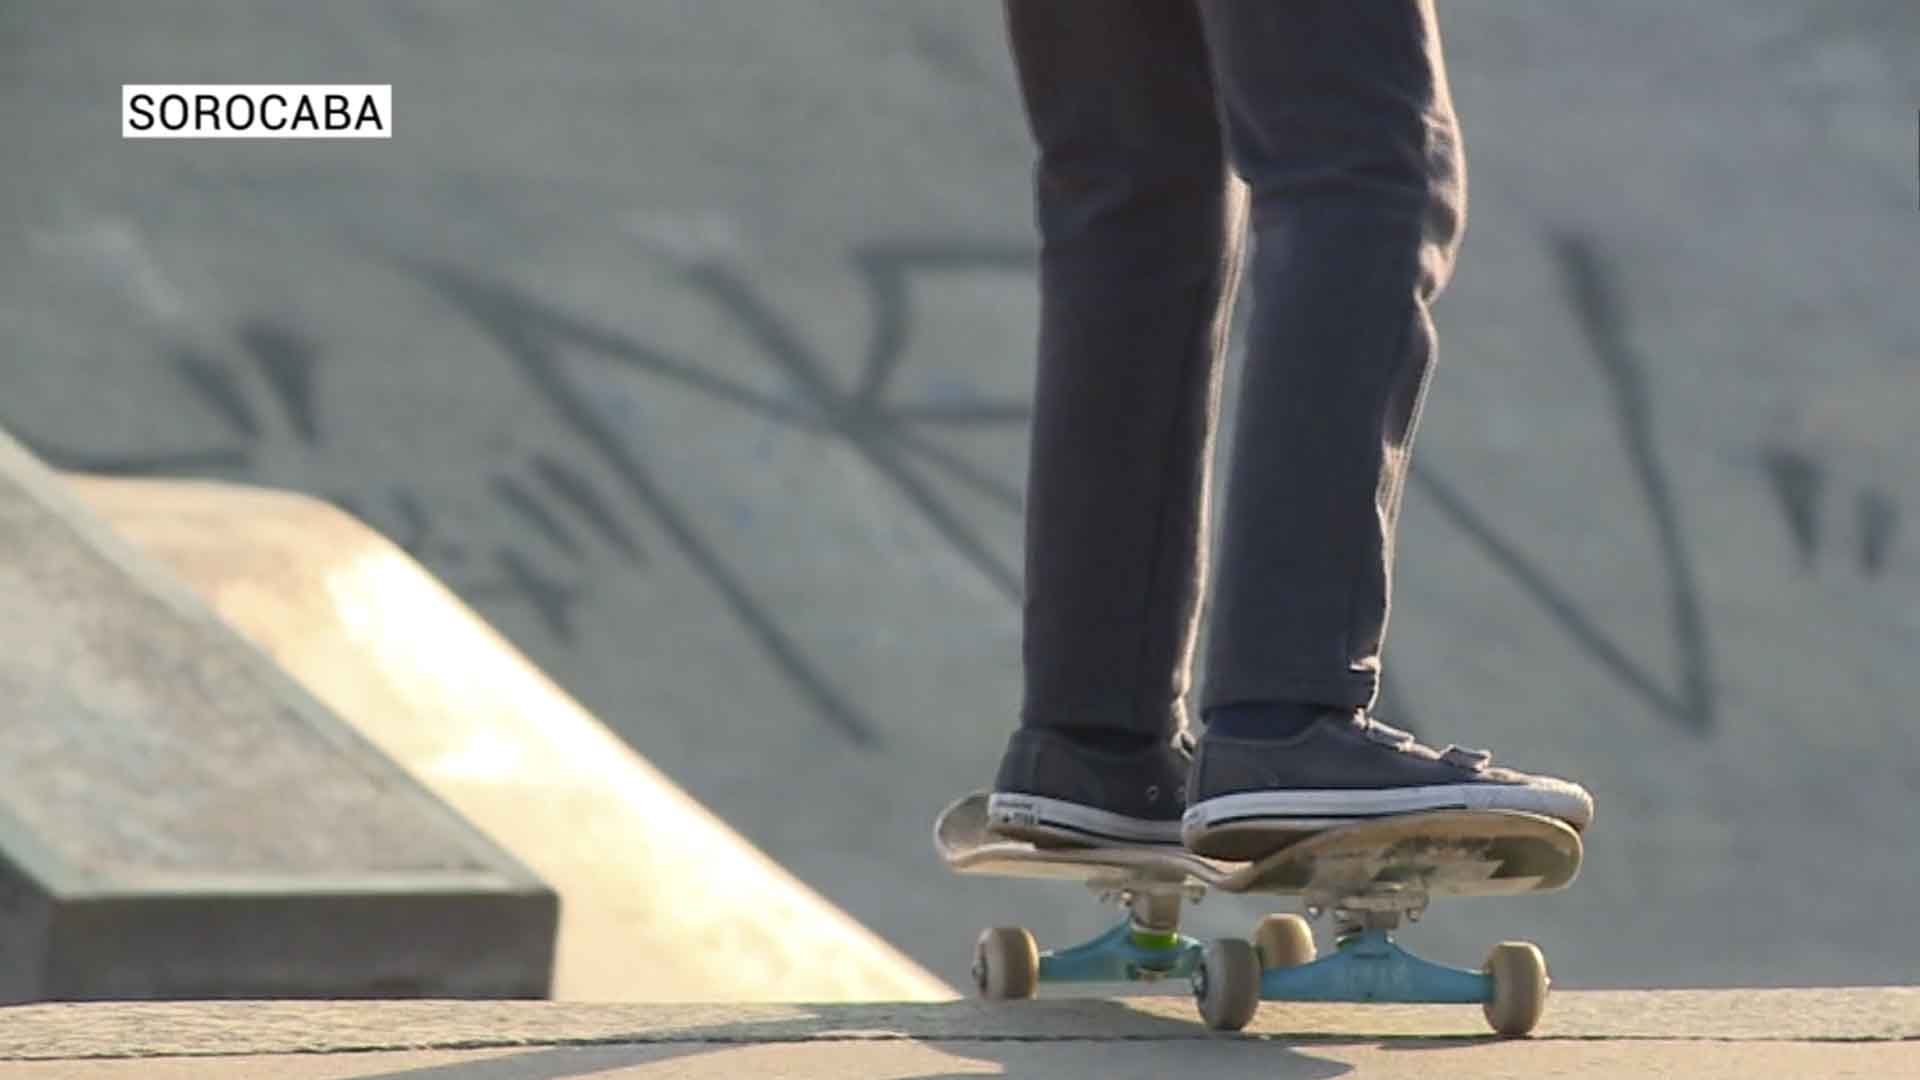 Adeptos de skate aumentam depois de resultado positivo em olimpíada